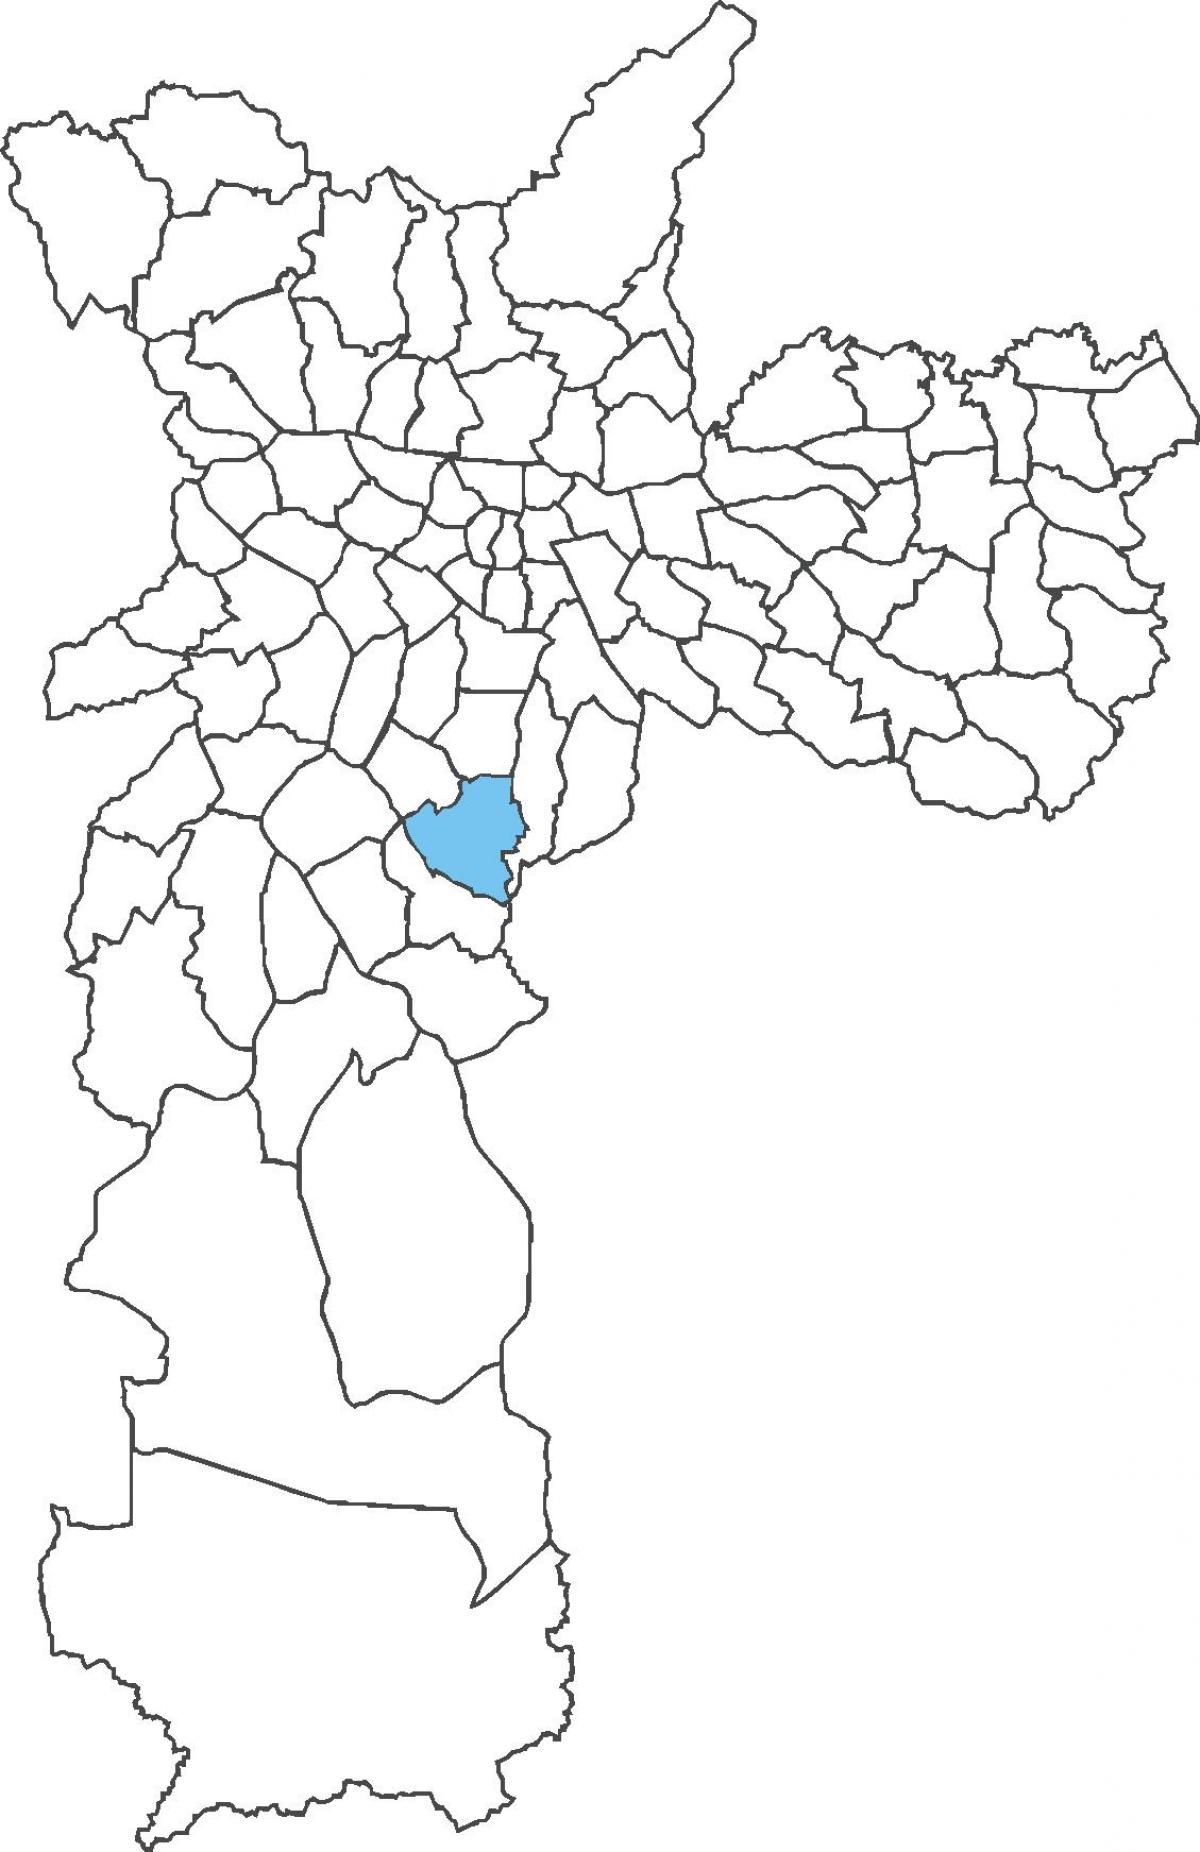 Map of Jabaquara district